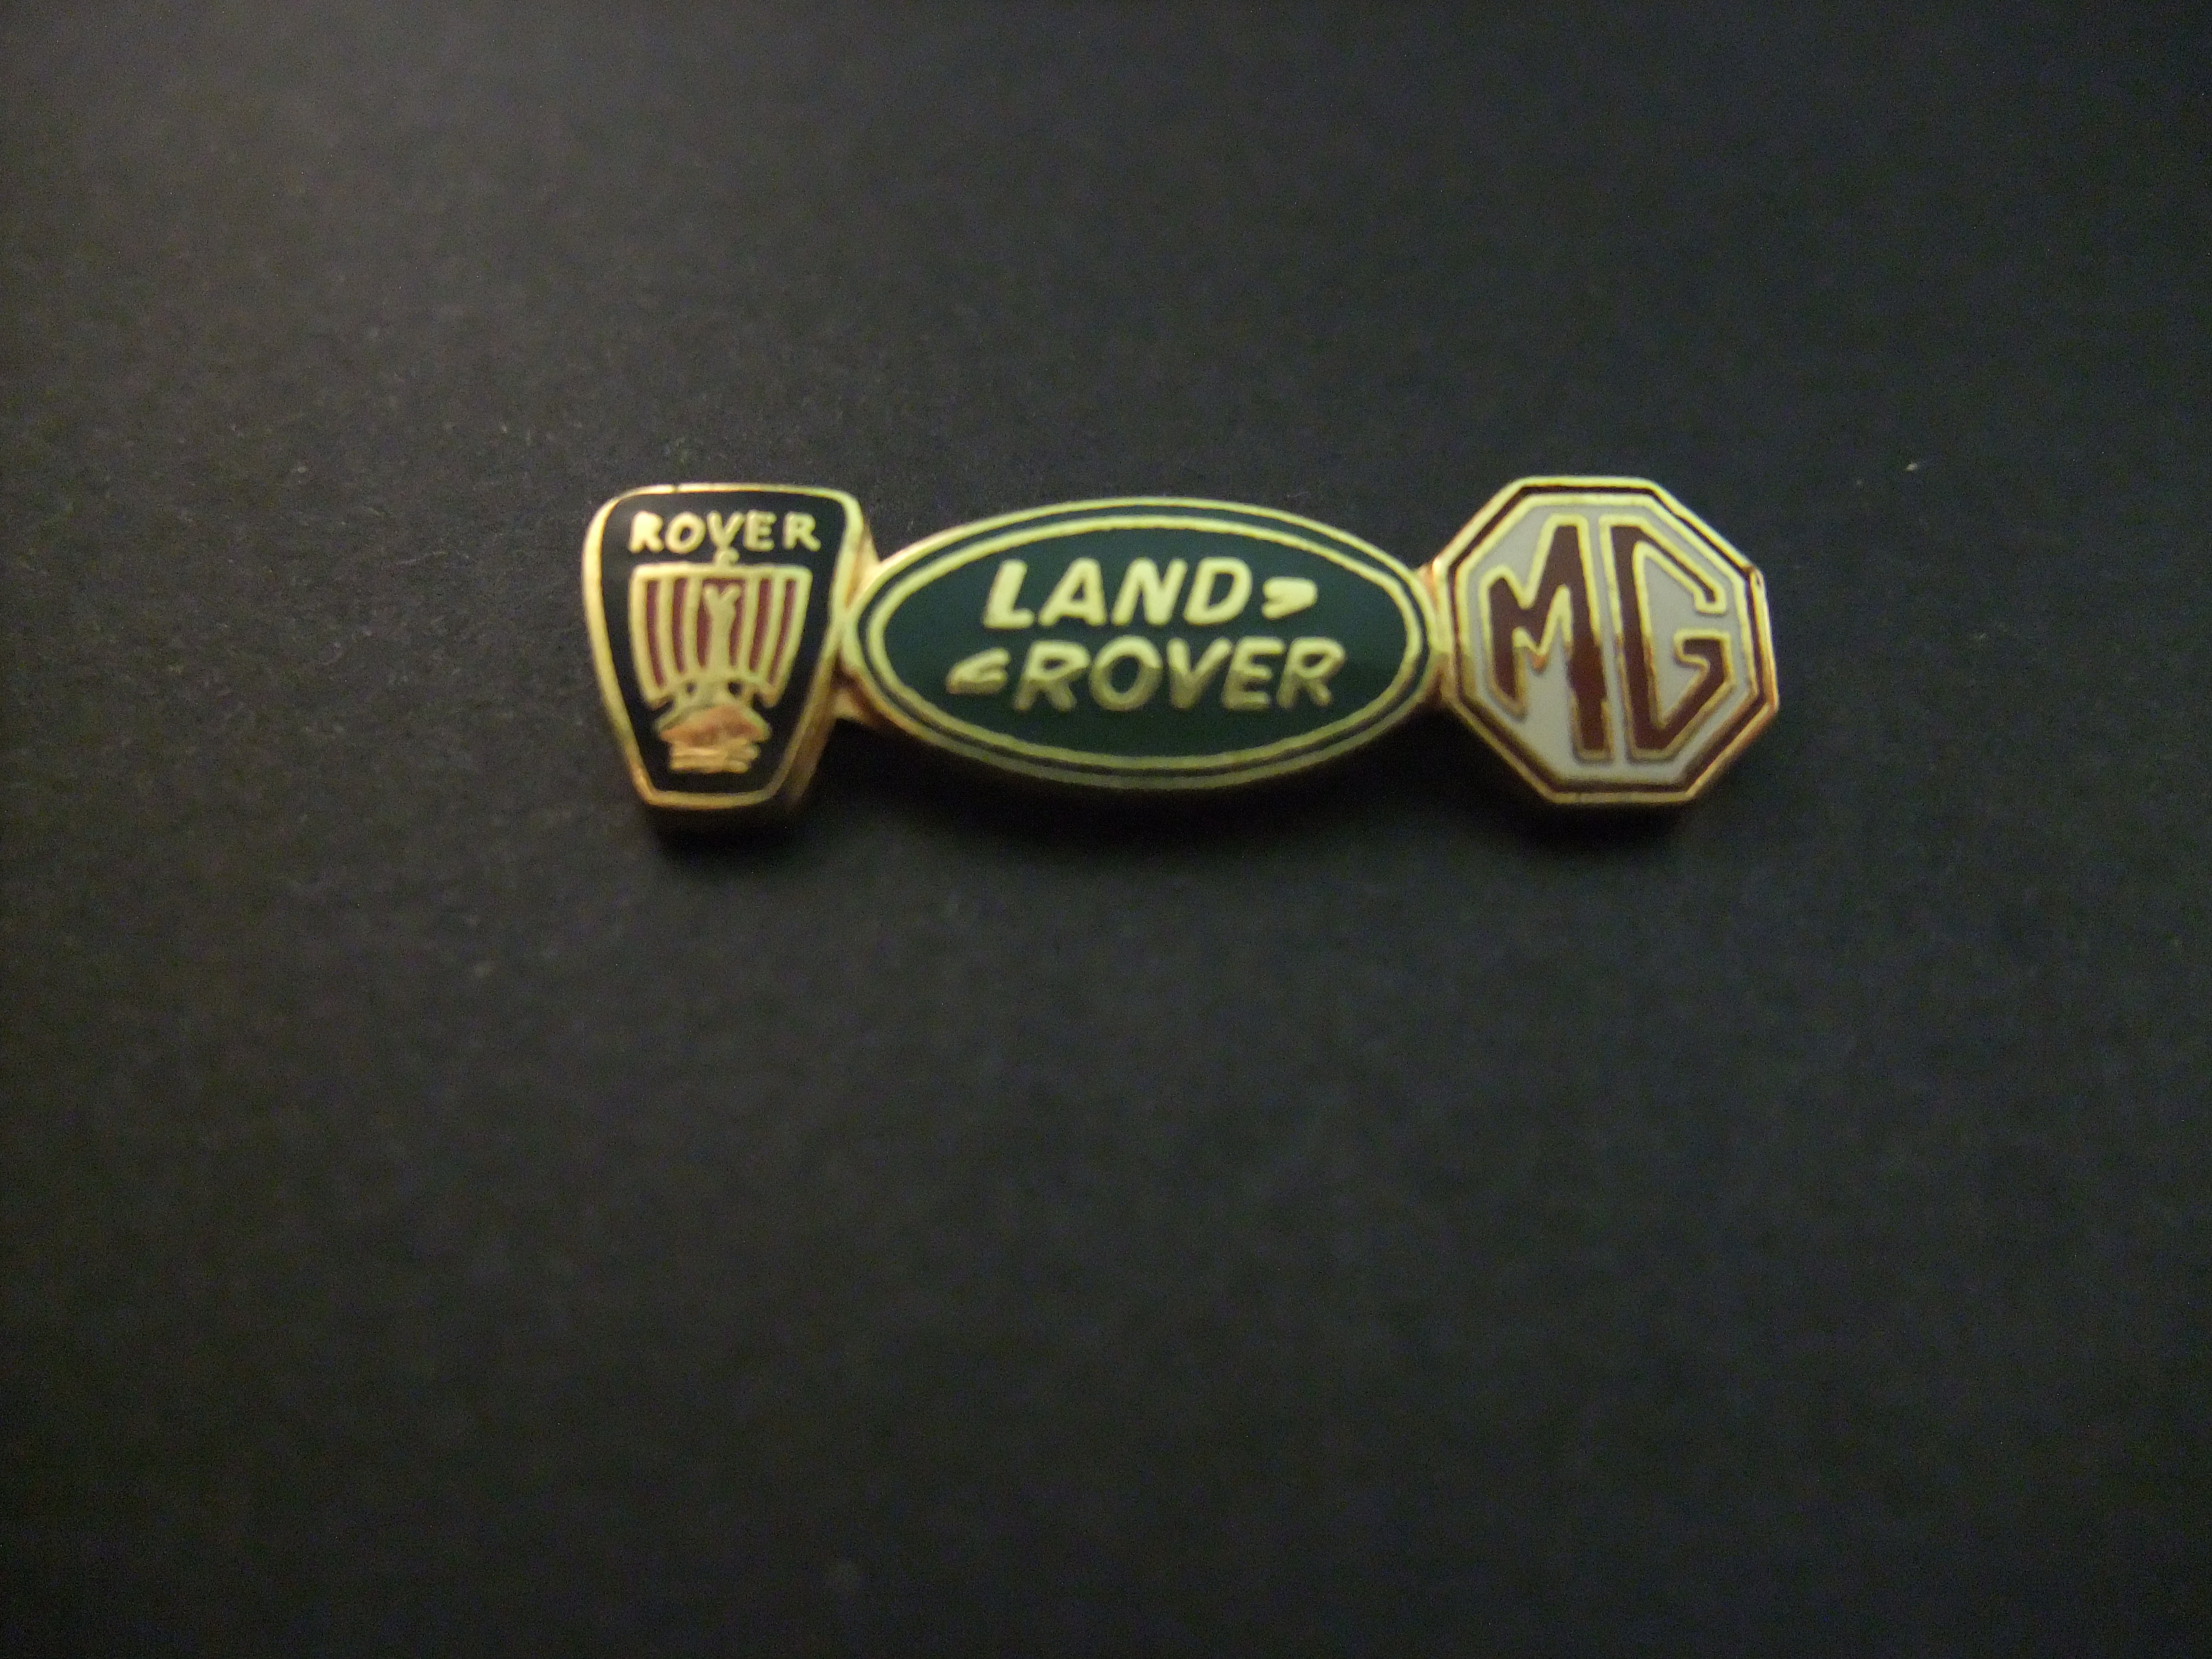 Rover-Landrover-MG drie logo's